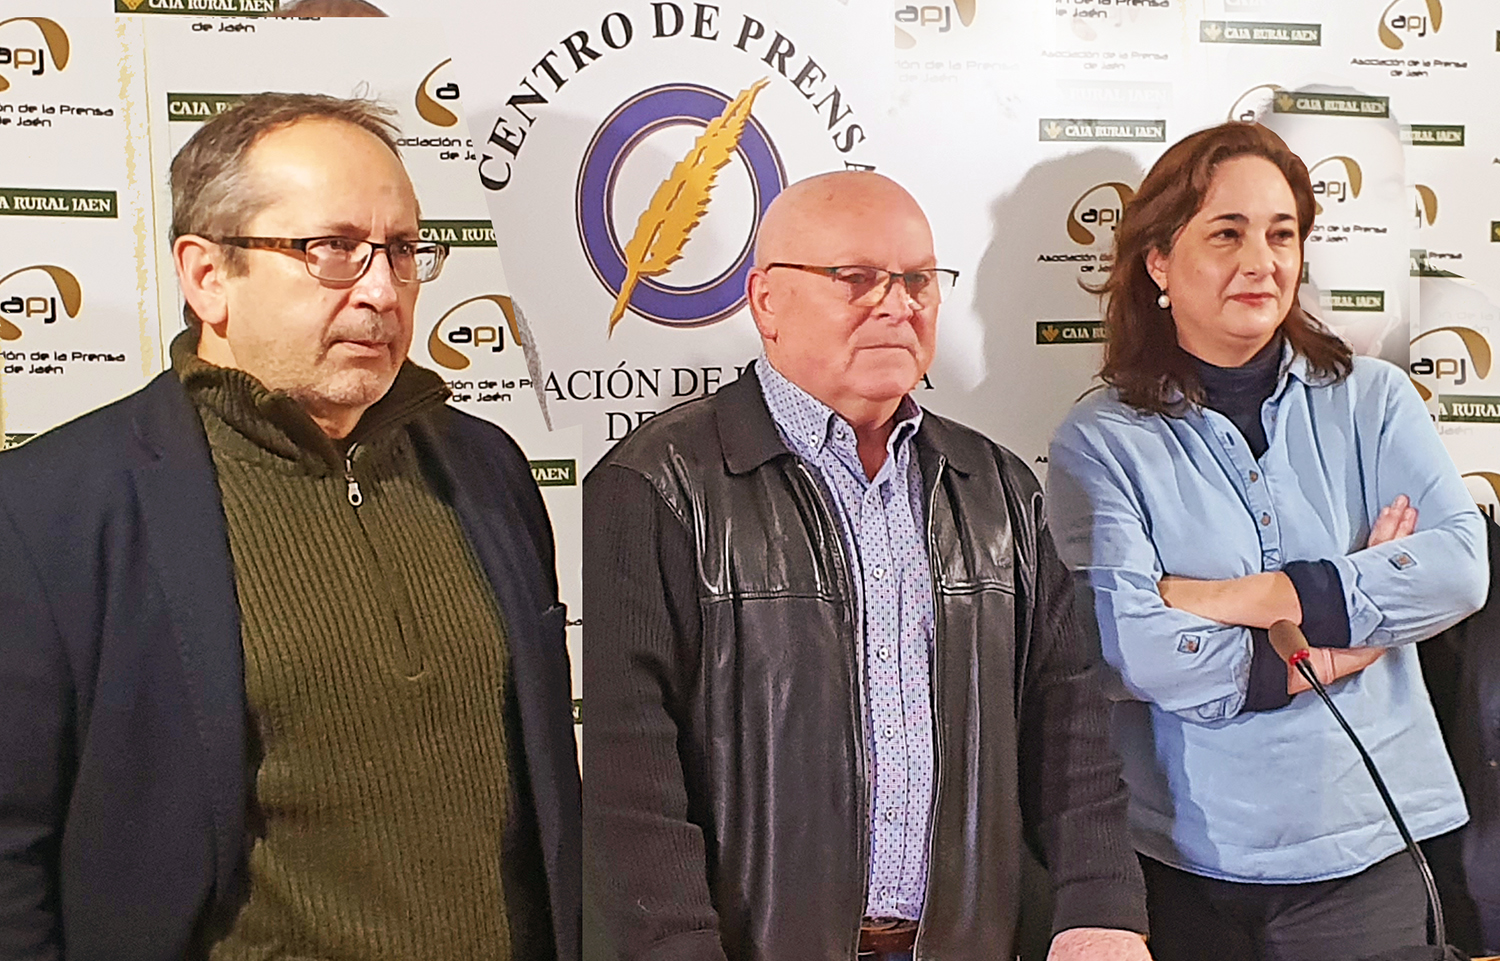 Jaén tendrá presencia este fin de semana en el Encuentro regional y la asamblea del Colegio de Periodistas de Andalucía en Palma del Río